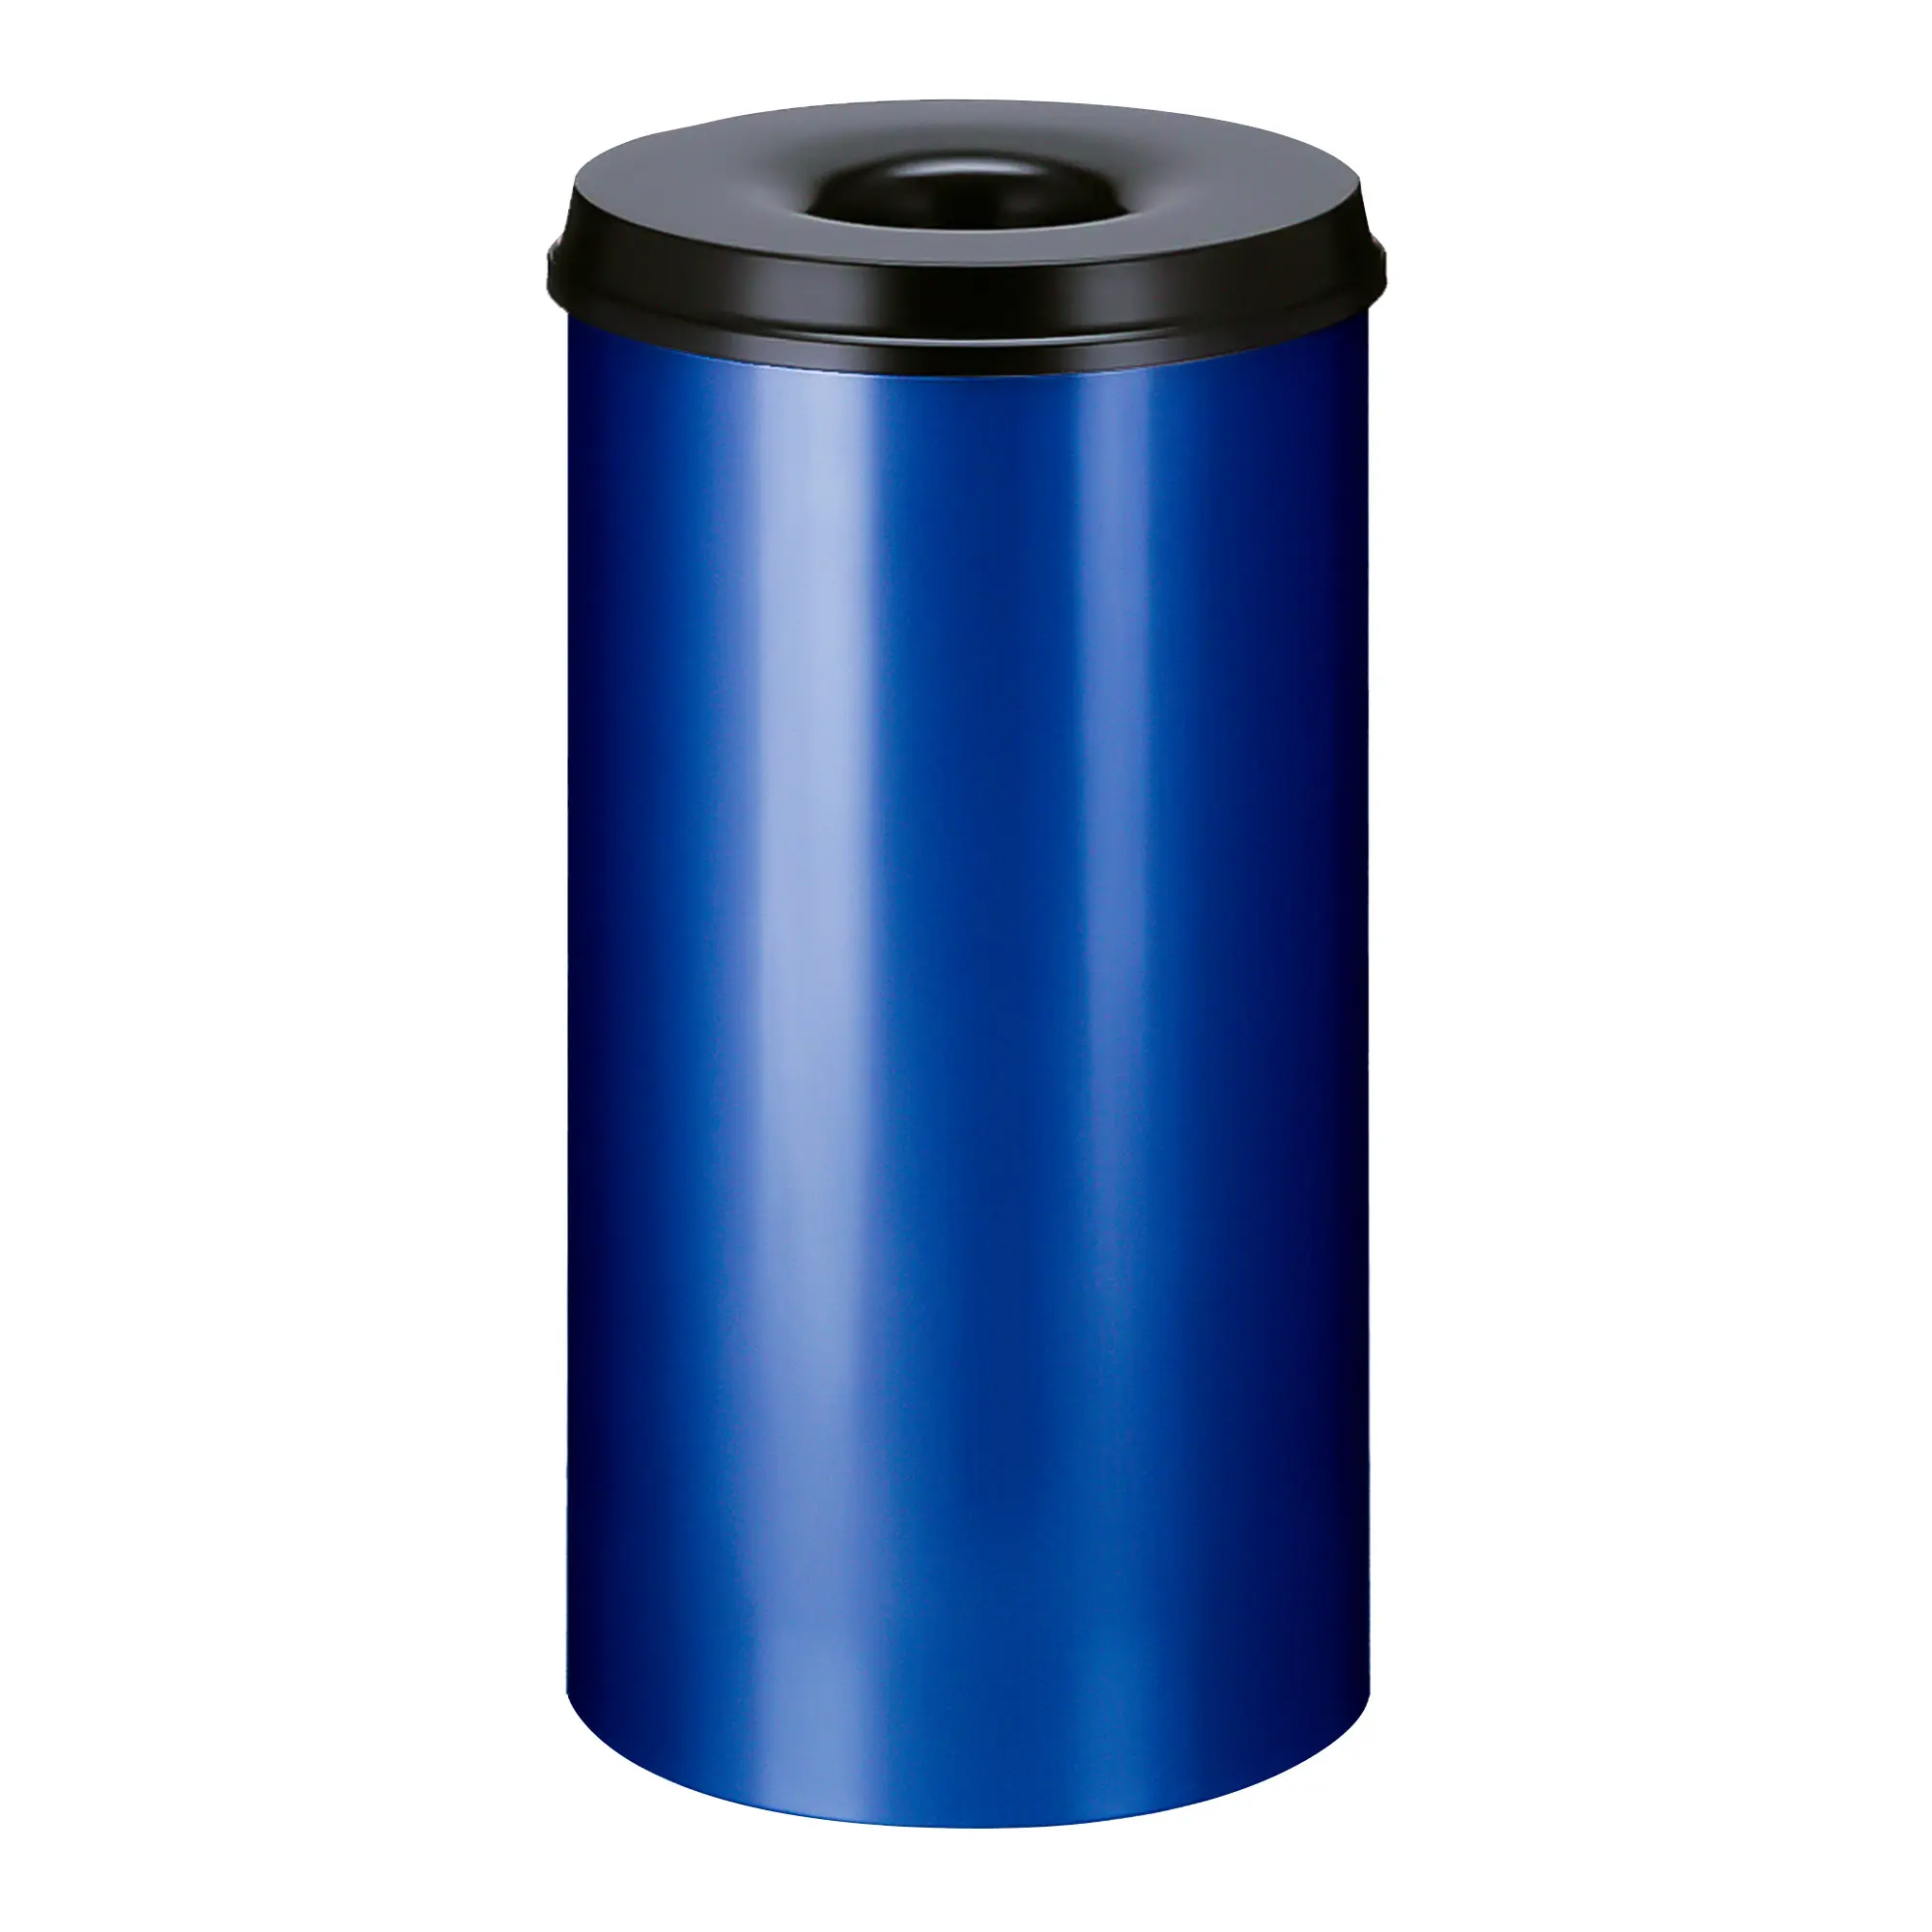 V-Part Feuerlöschender Papierkorb 50 Liter blau/schwarz 31014736_1